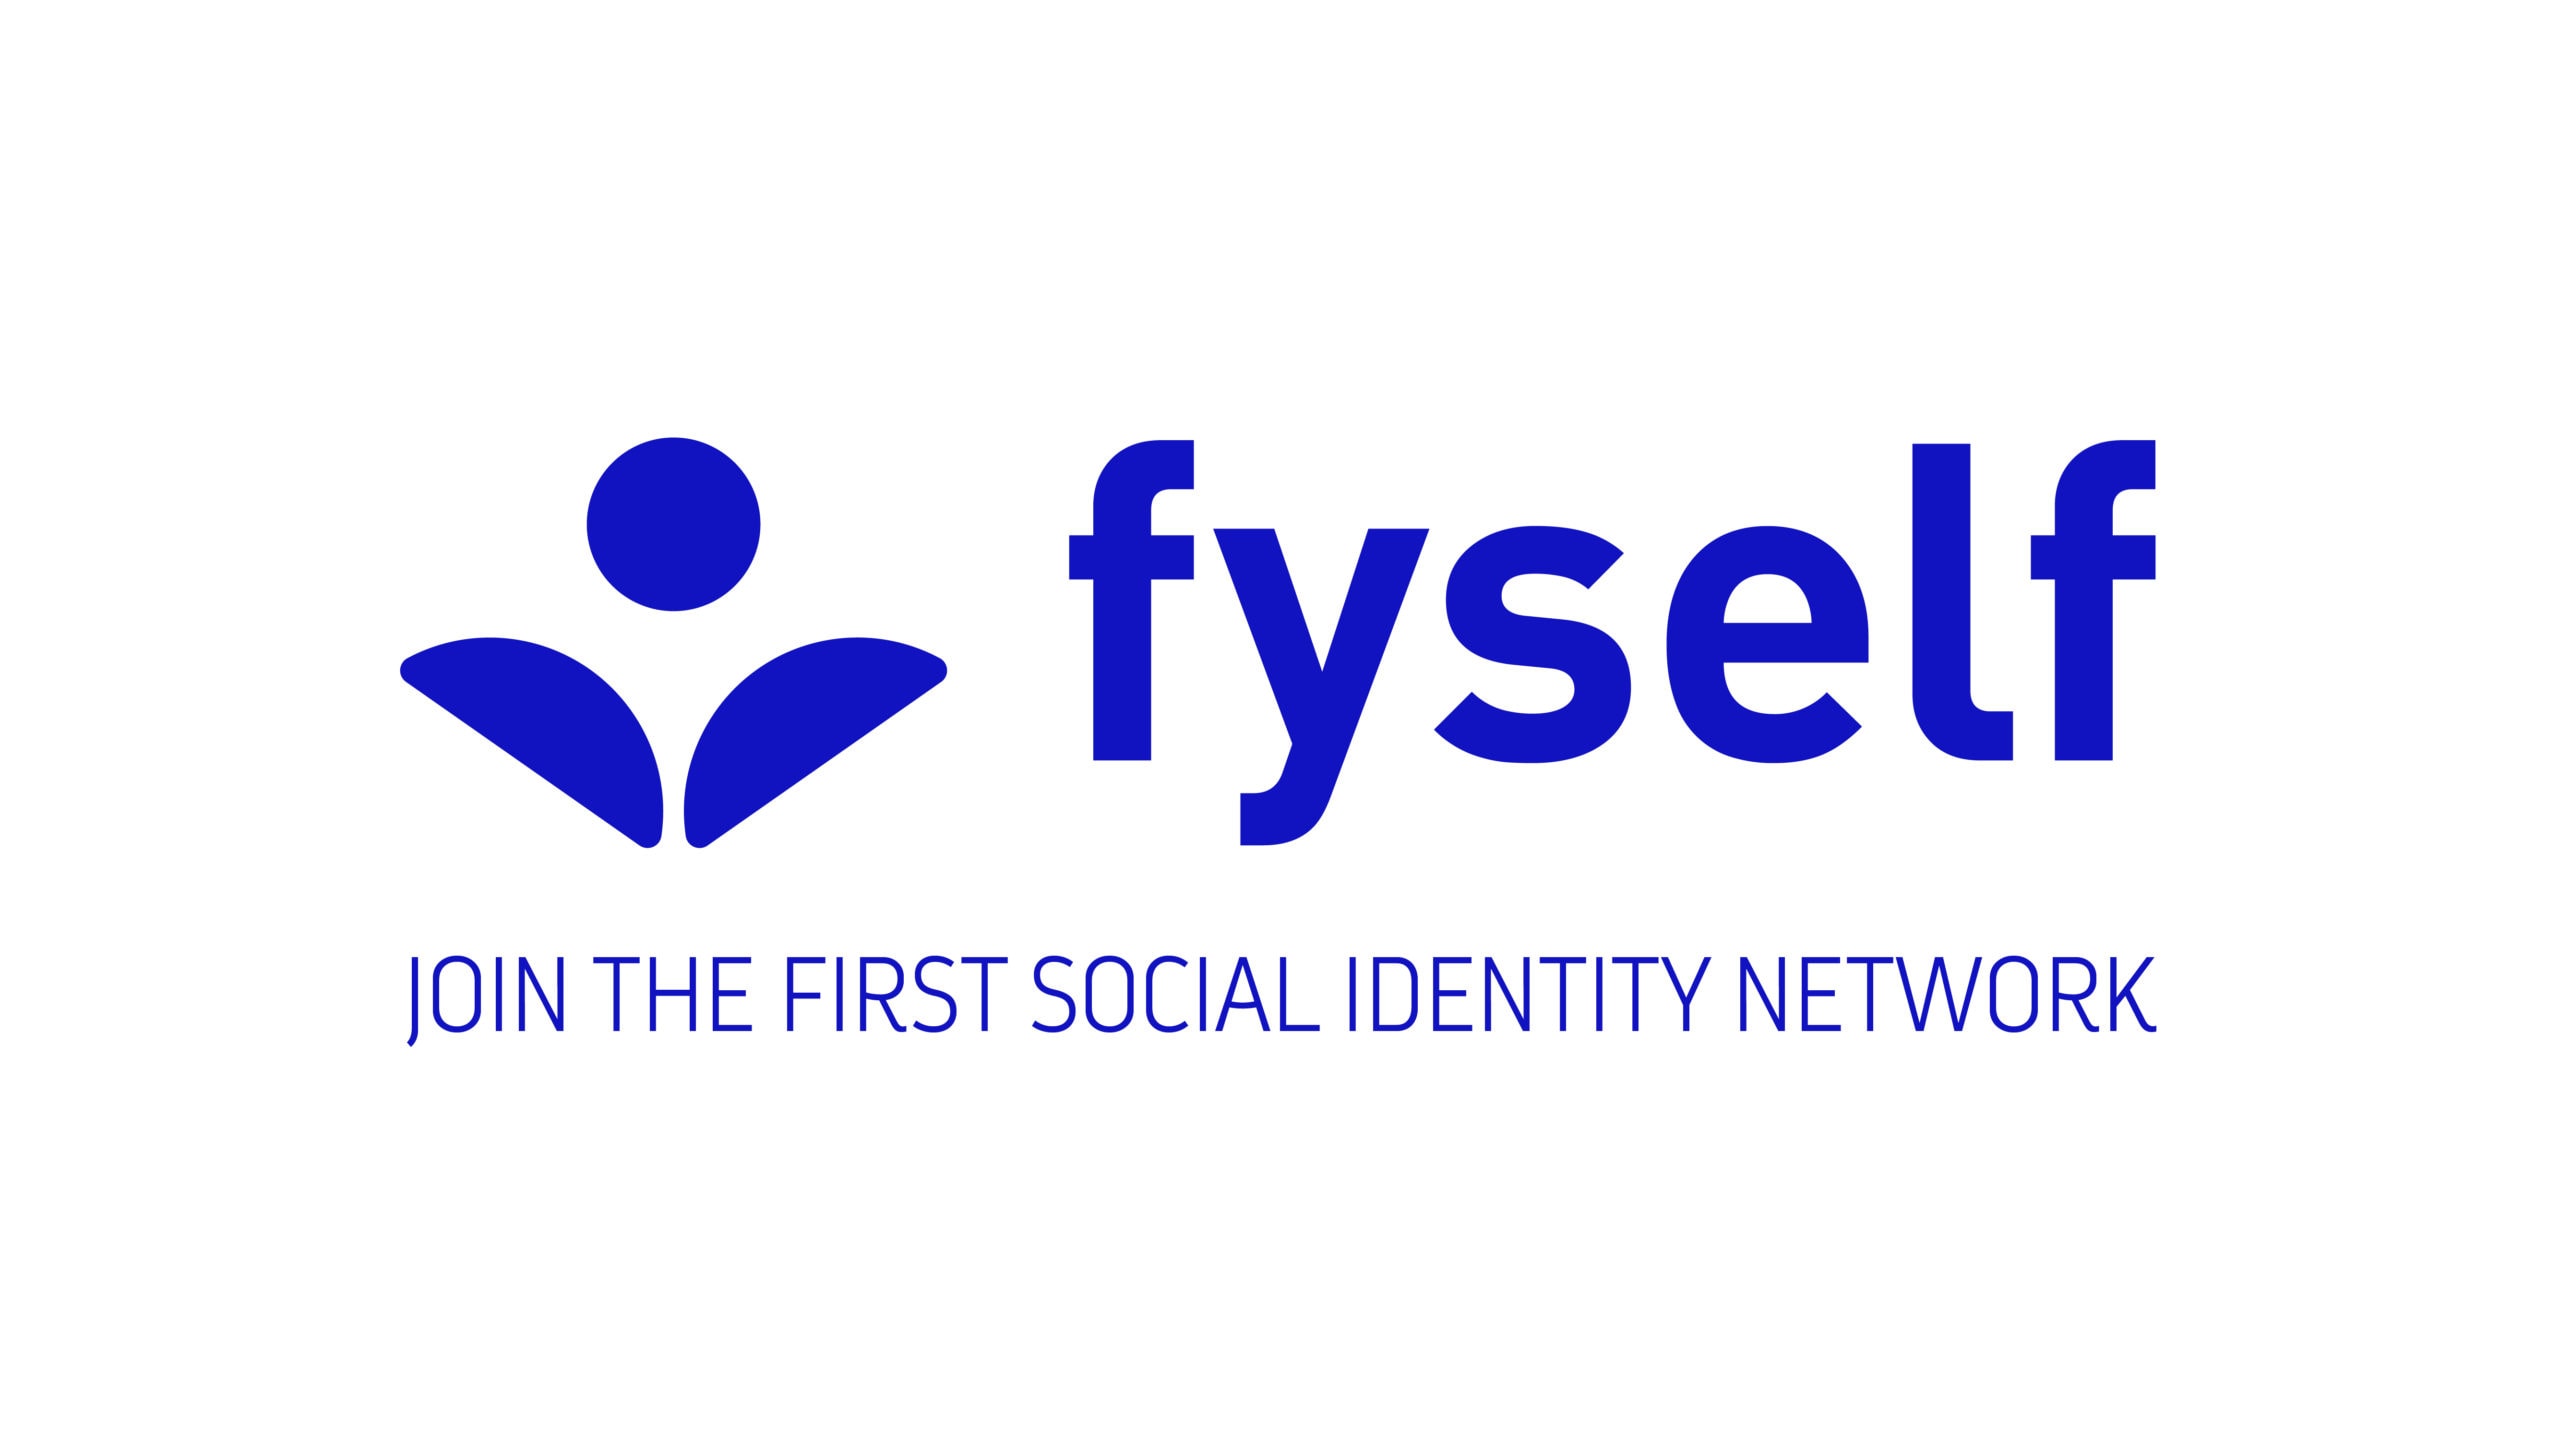 Red de identidad social: ¿qué es?